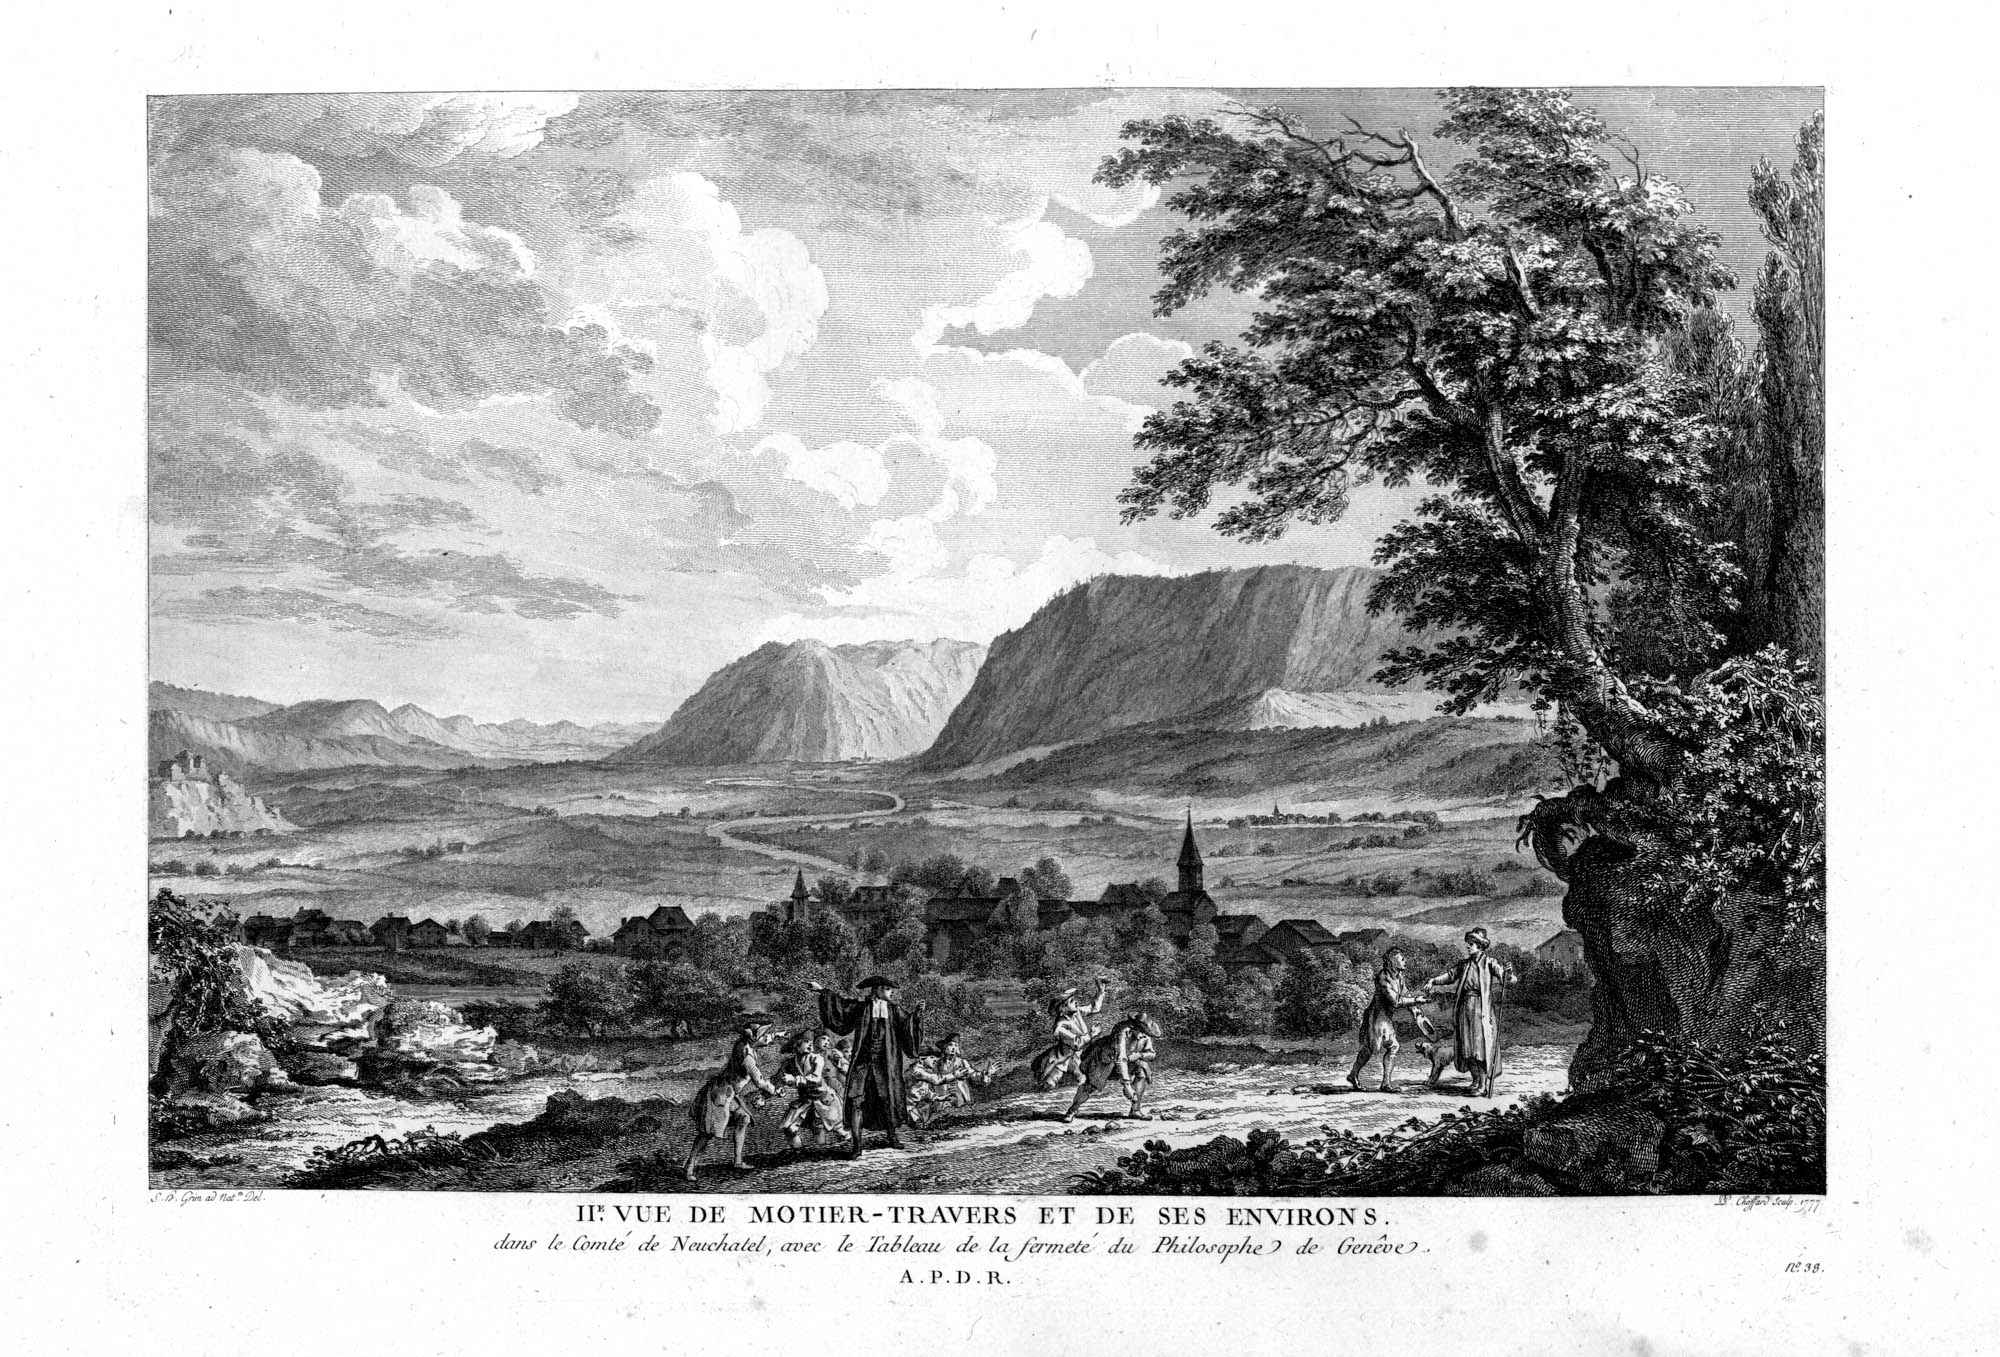 IIè vue de Motier-Travers et de ses environs, dans le Comté de Neuchatel, avec le Tableau de la fermeté du Philosophe de Genêve